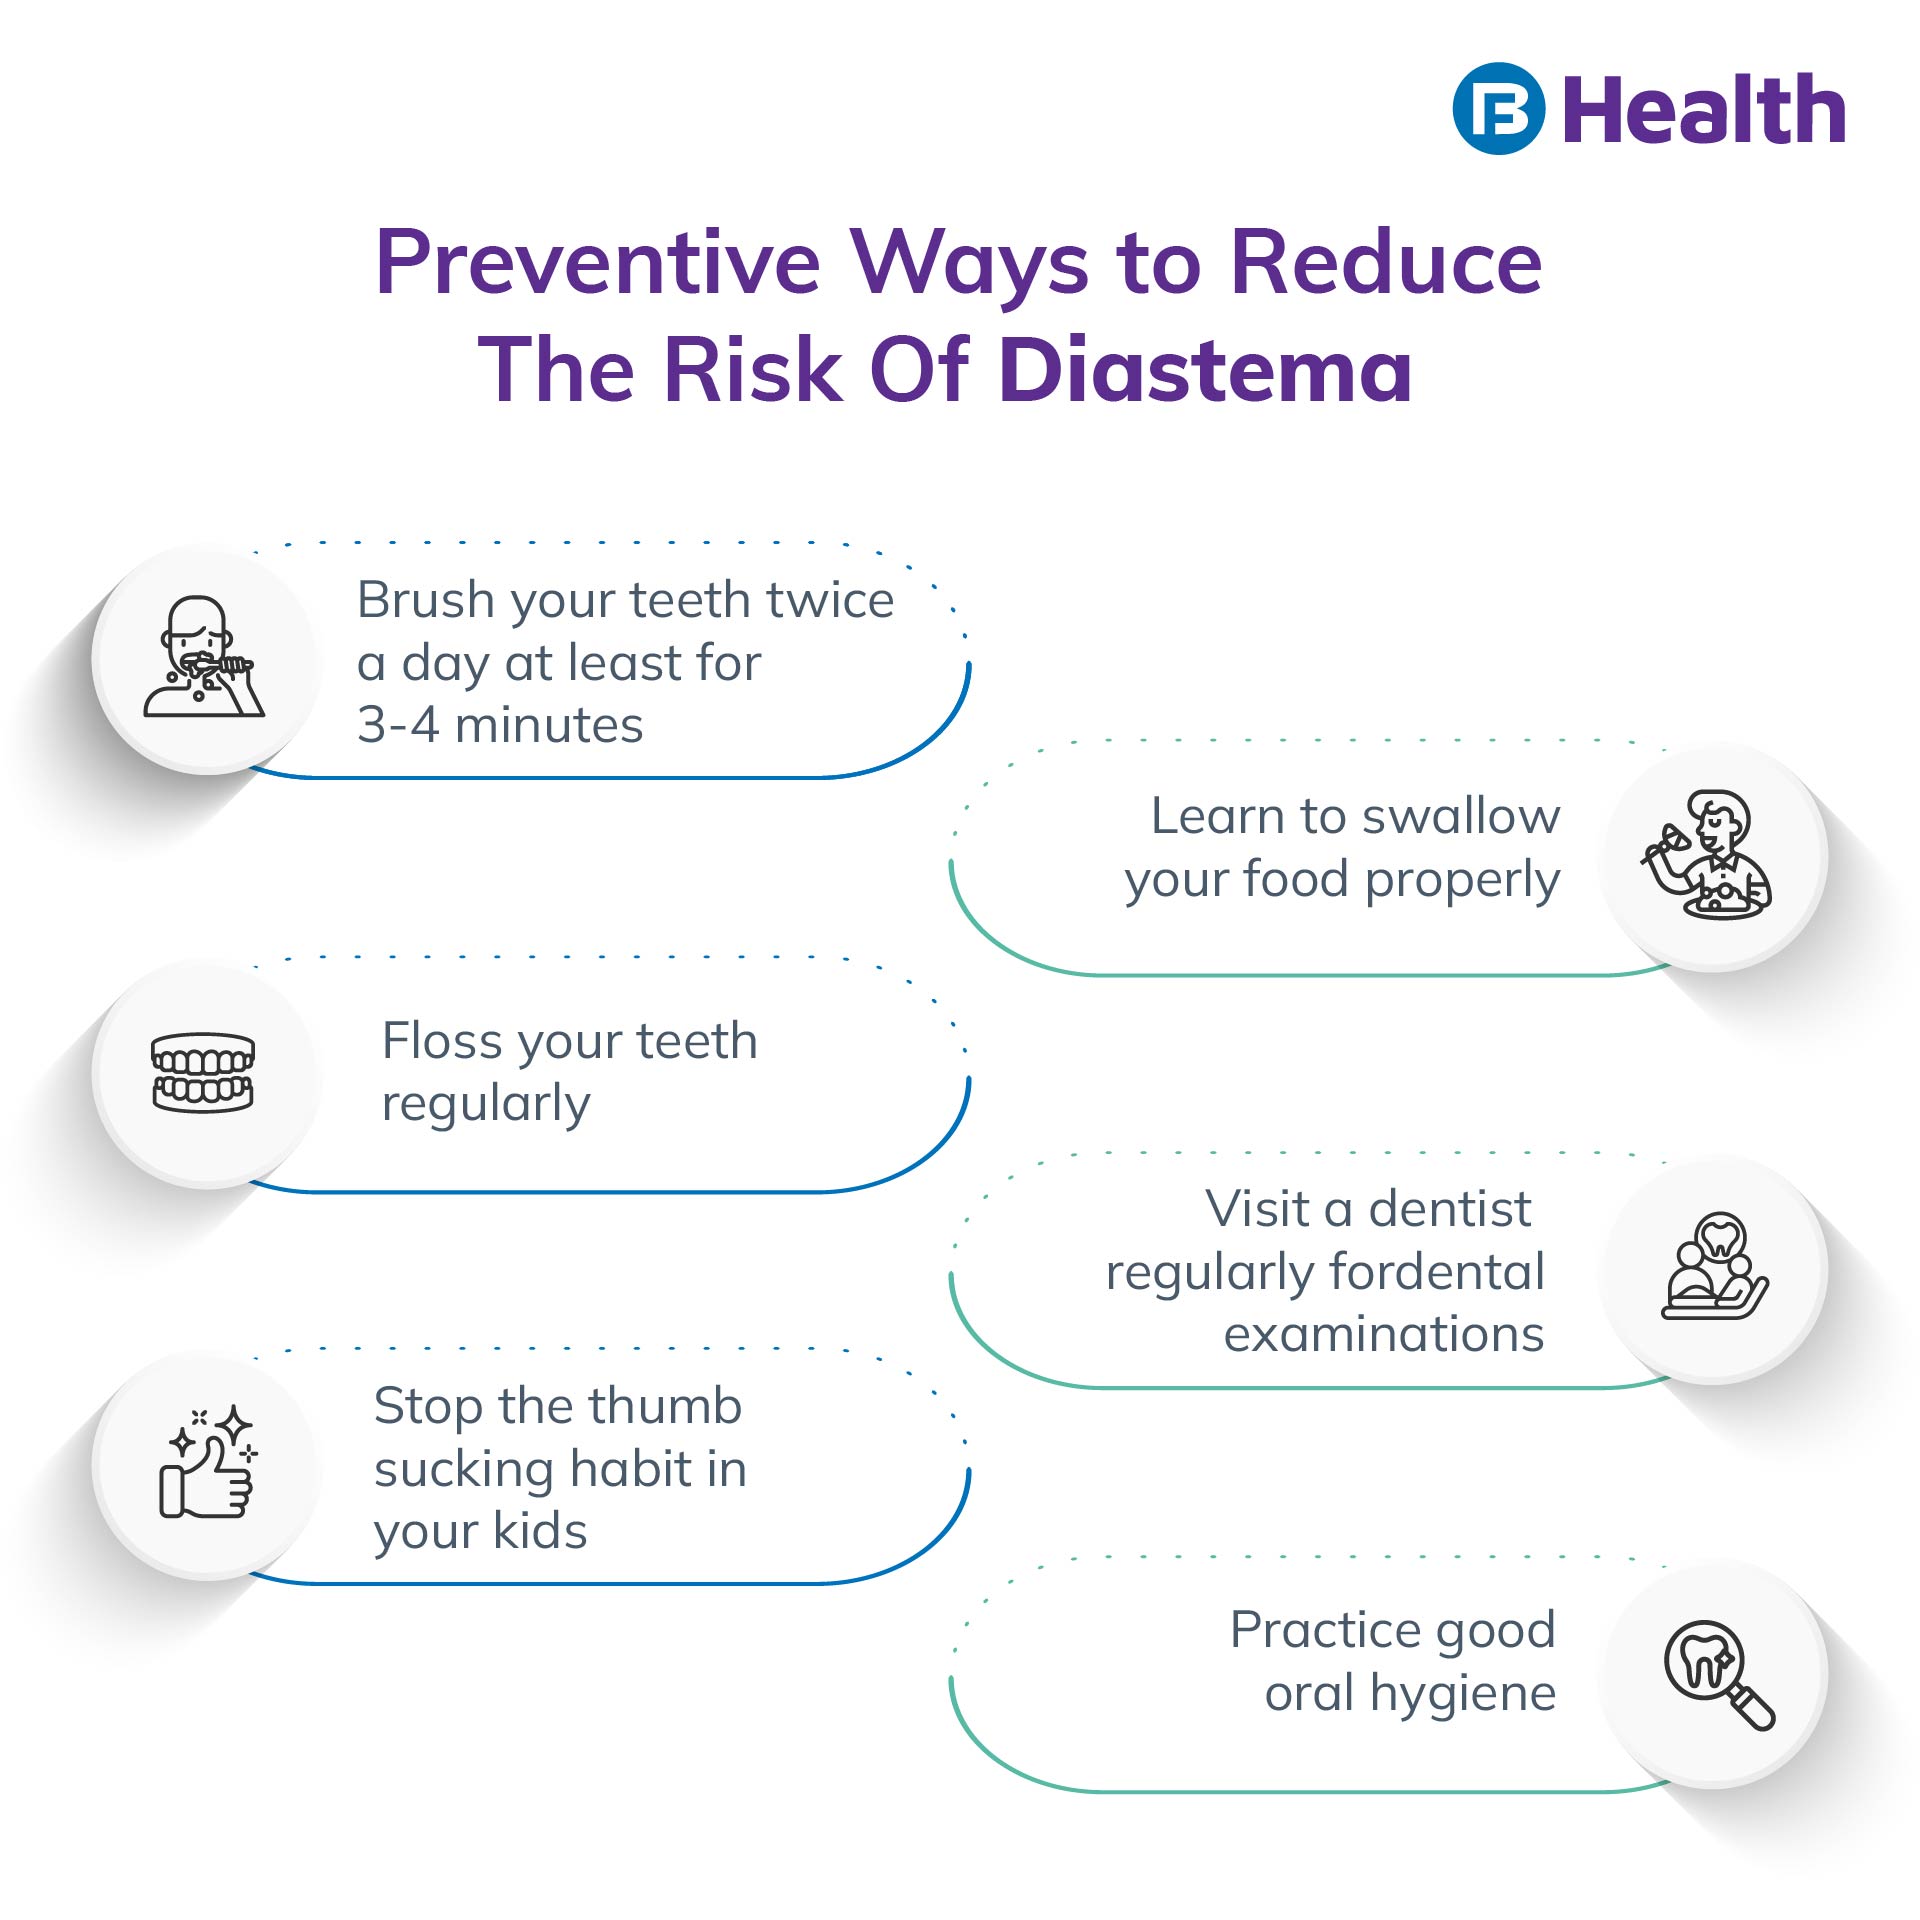 Reduce risk of Diastema